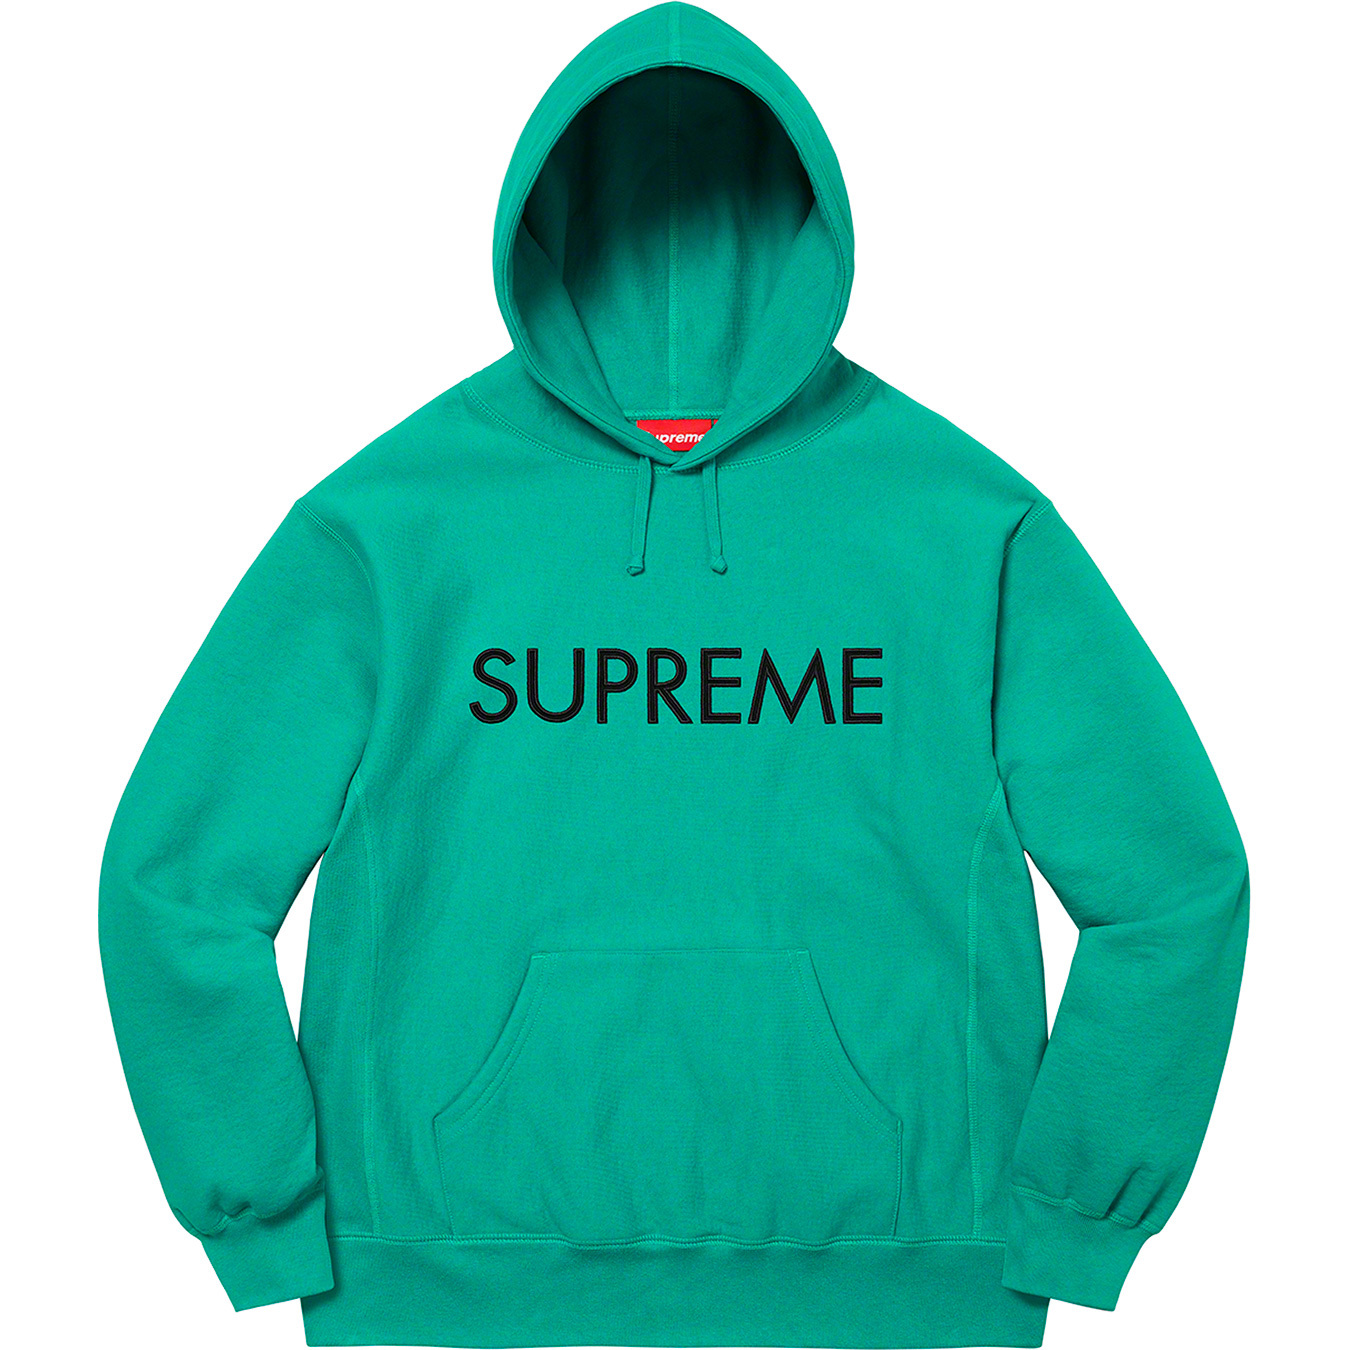 Supreme Capital Hooded Sweatshirt